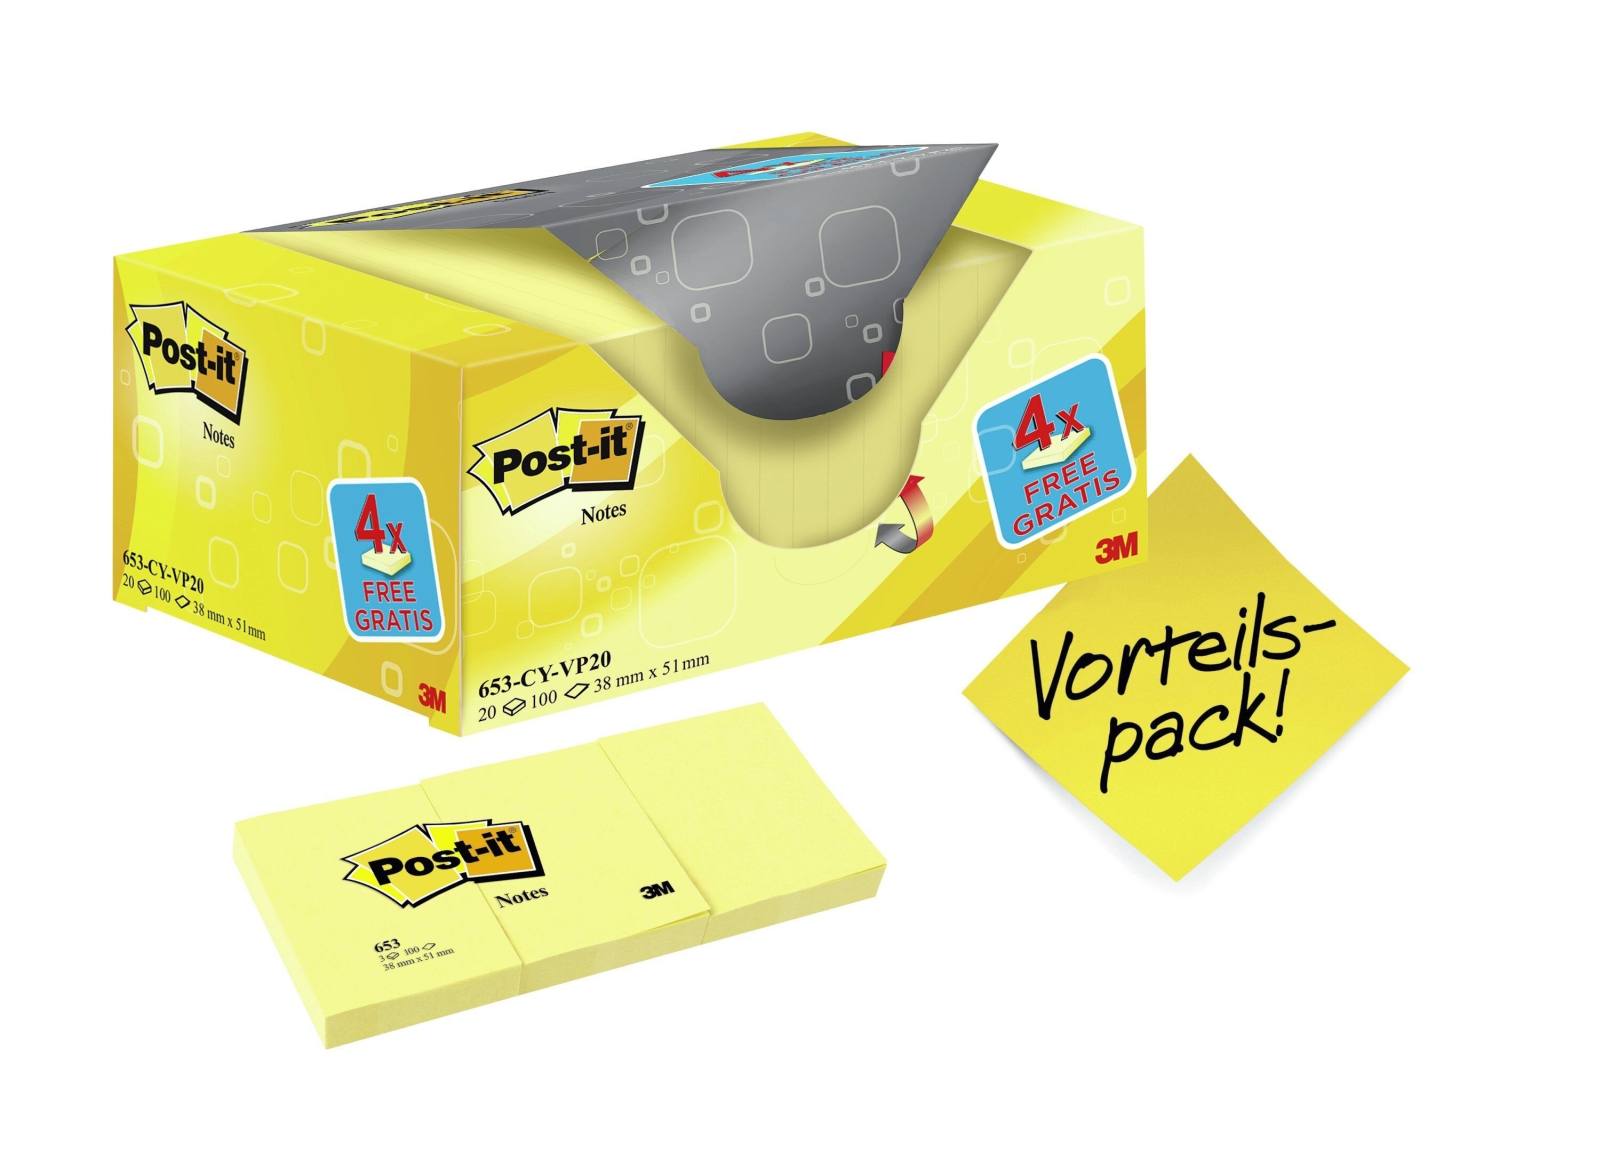 3M Post-it Notes Promozione 653Y-20, 20 blocchetti da 100 fogli in una confezione a prezzo speciale, giallo, 51 mm x 38 mm